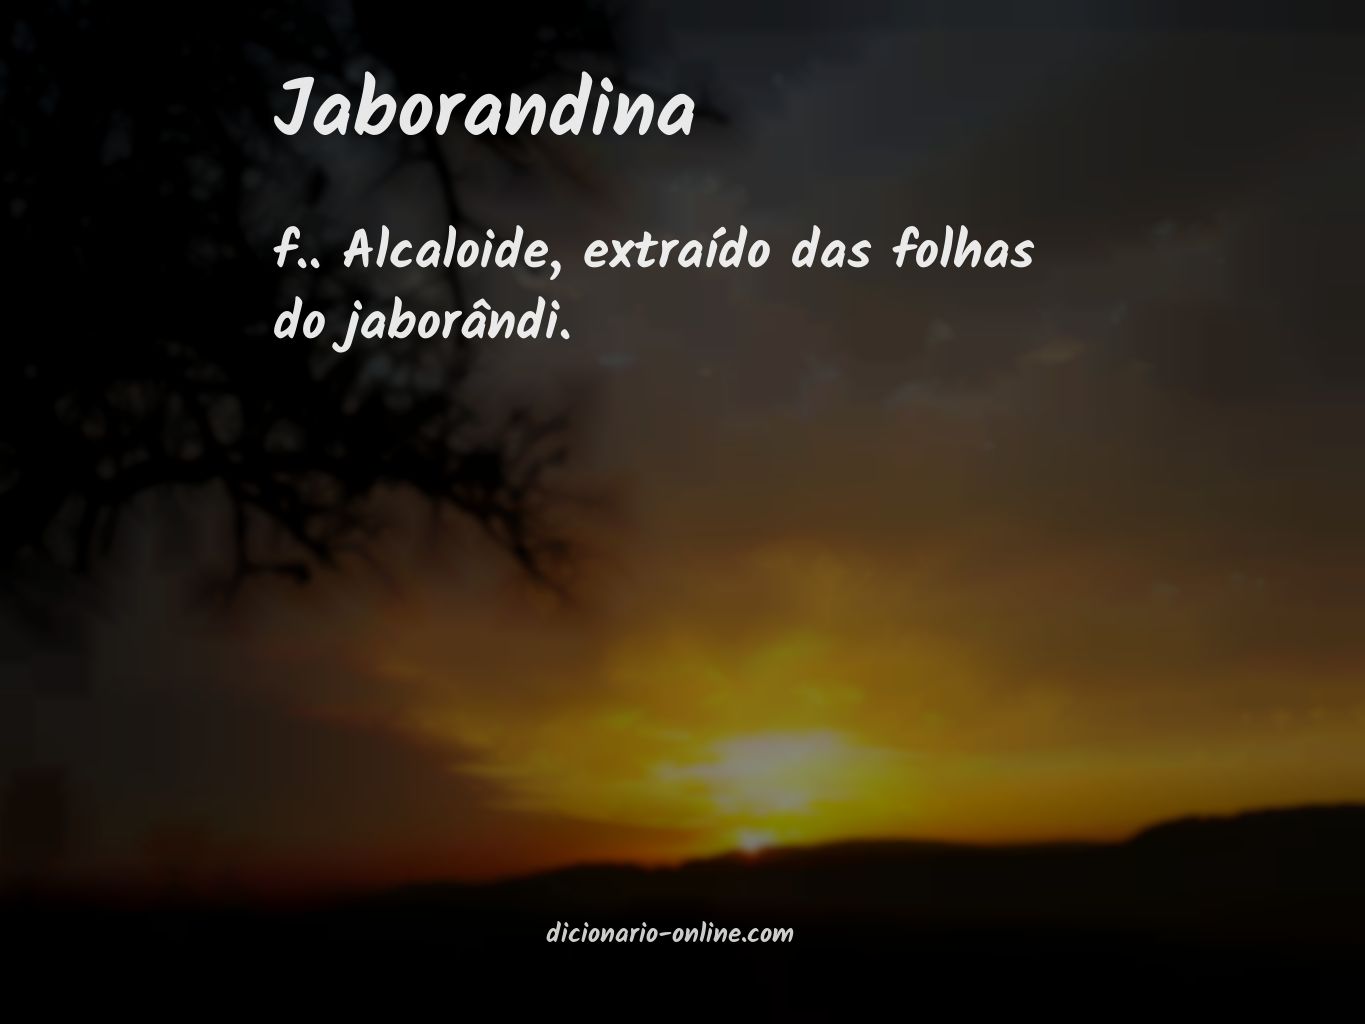 Significado de jaborandina